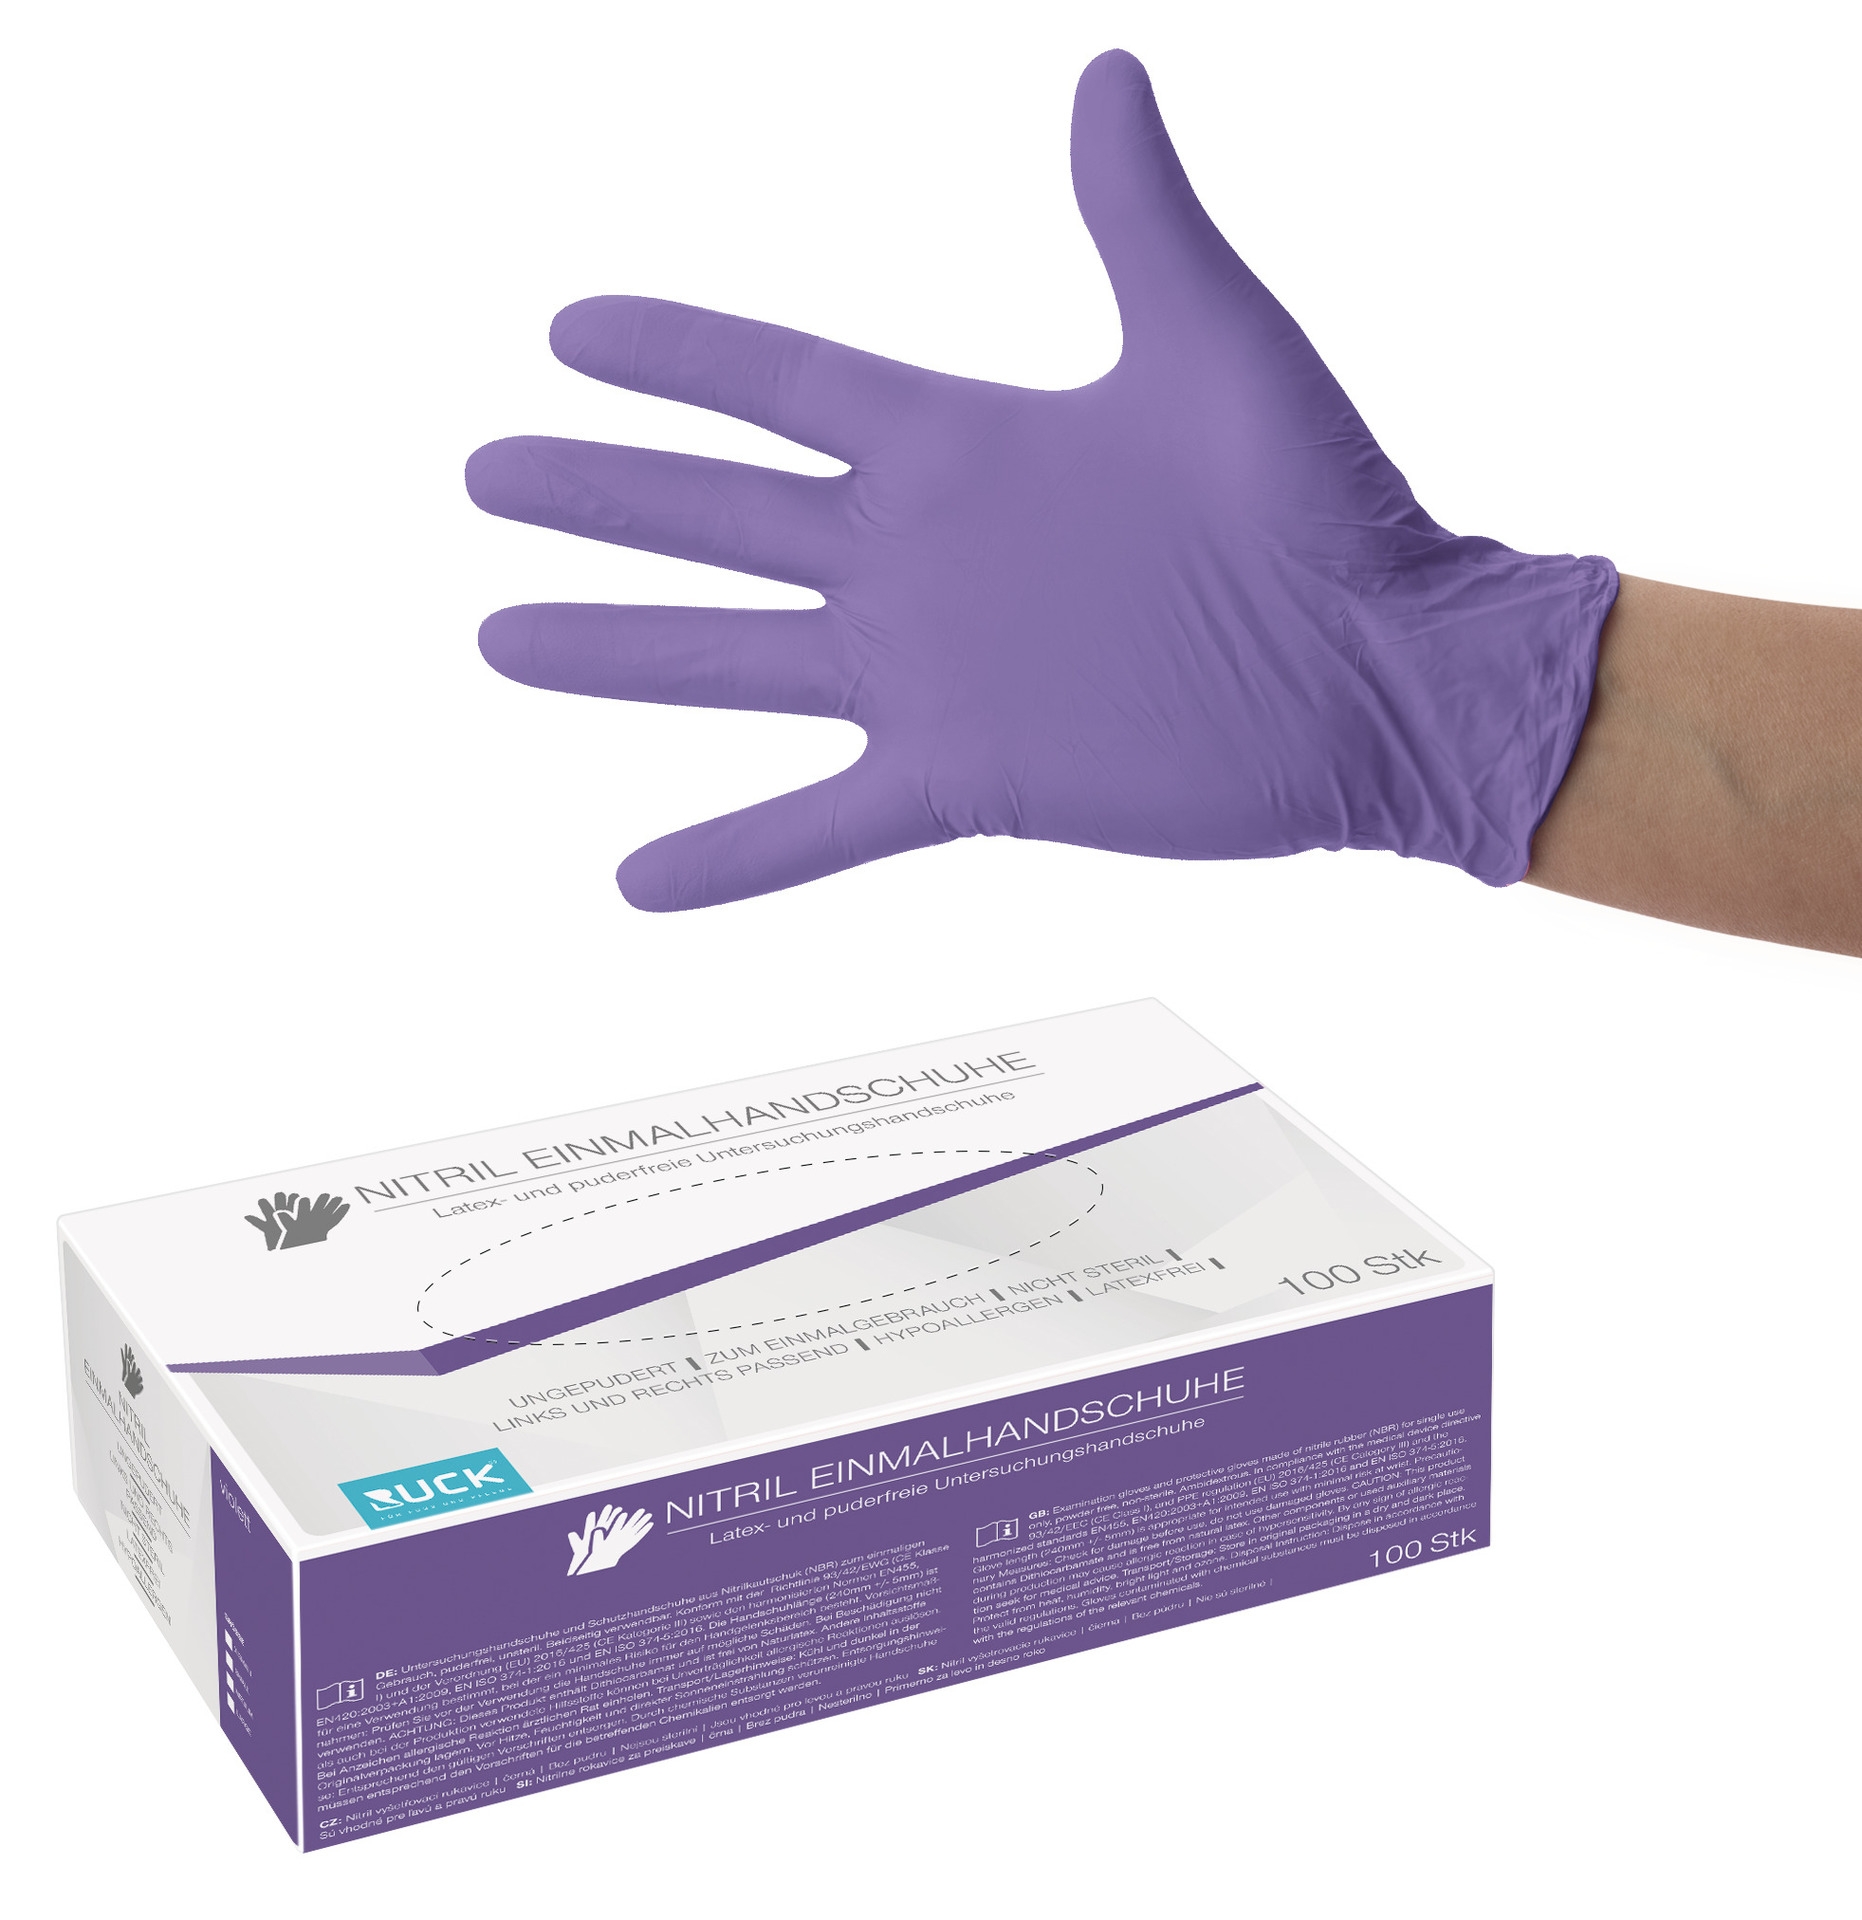 RUCK Nitril-Einmalhandschuhe violett ungepudert | S klein 100 Stück